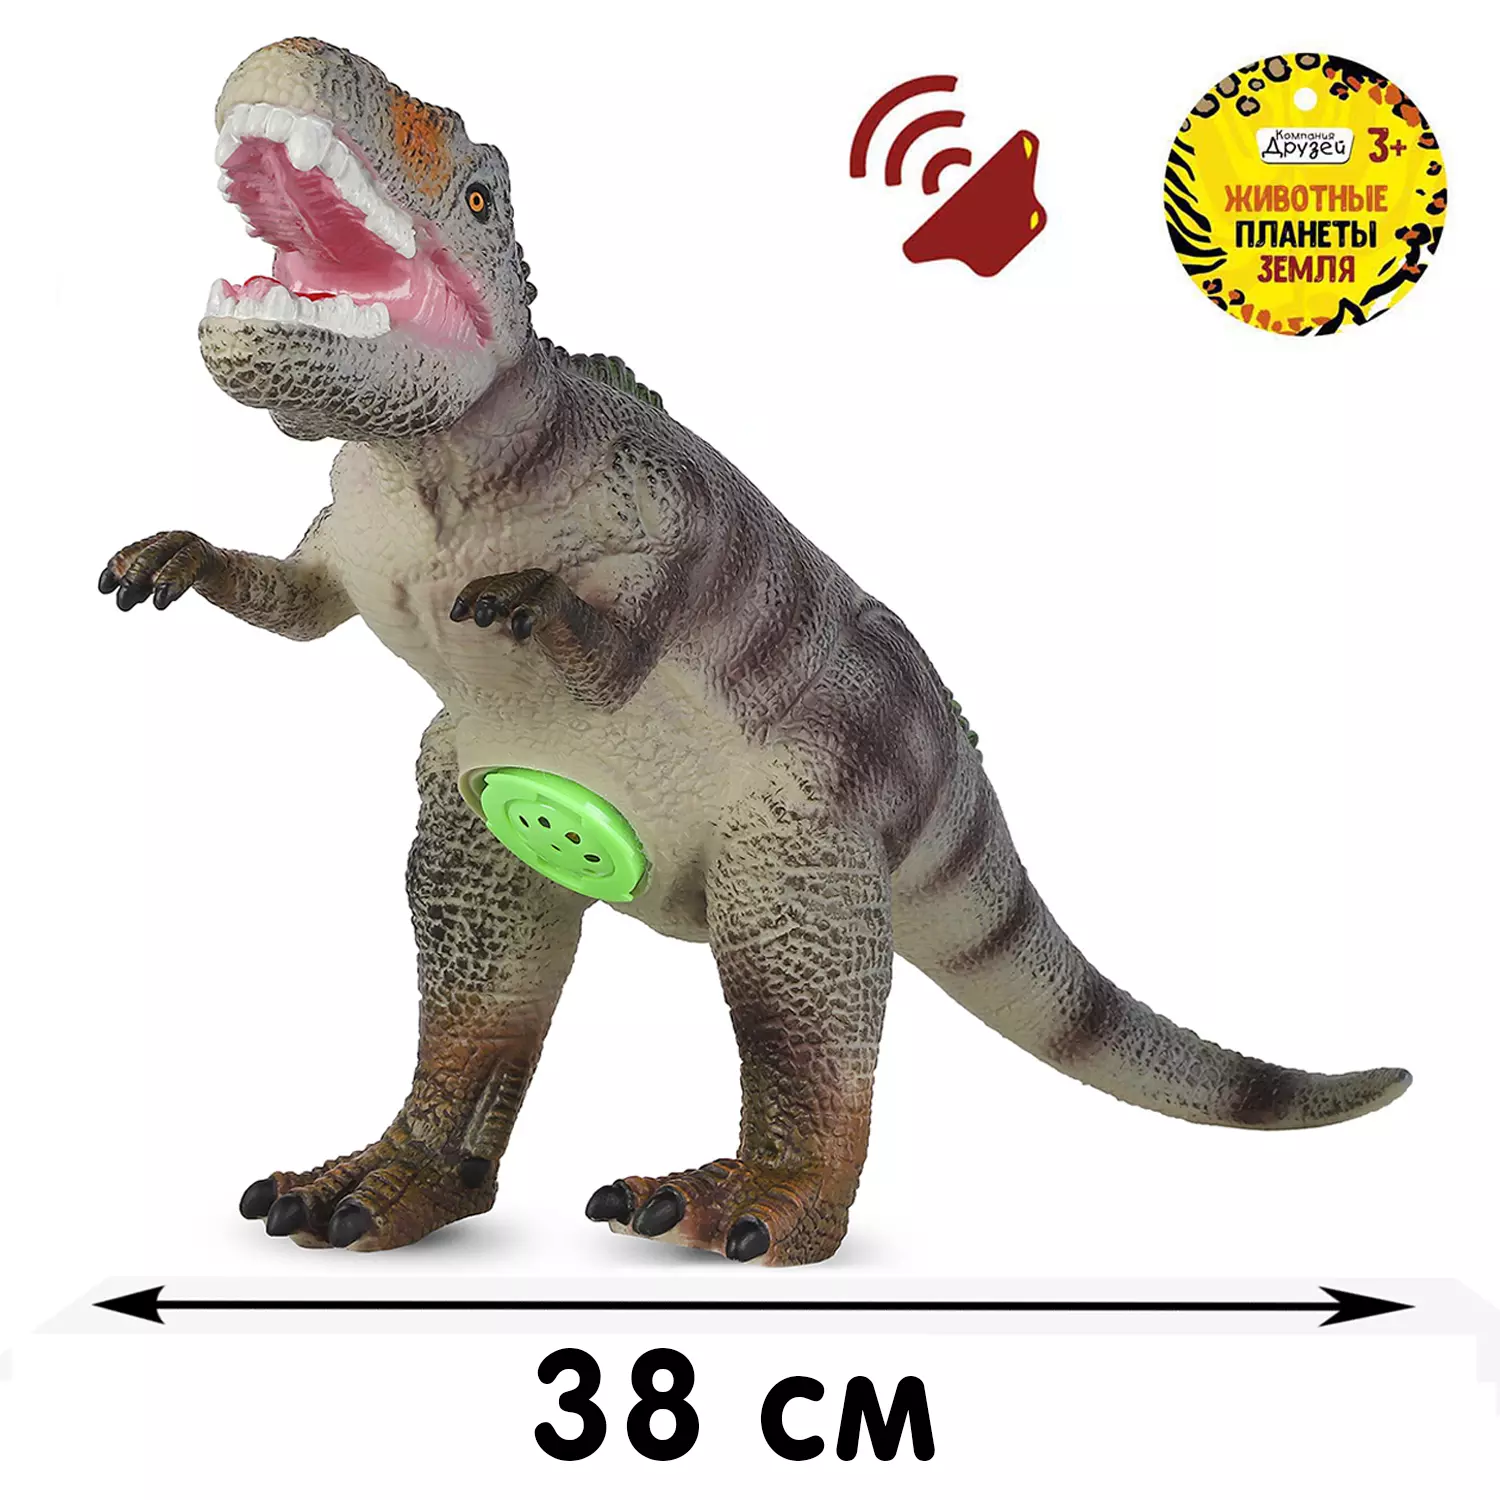 Игровой набор, серия Животные планеты Земля. Динозавр с чипом, звук - рёв животного, эластичная п